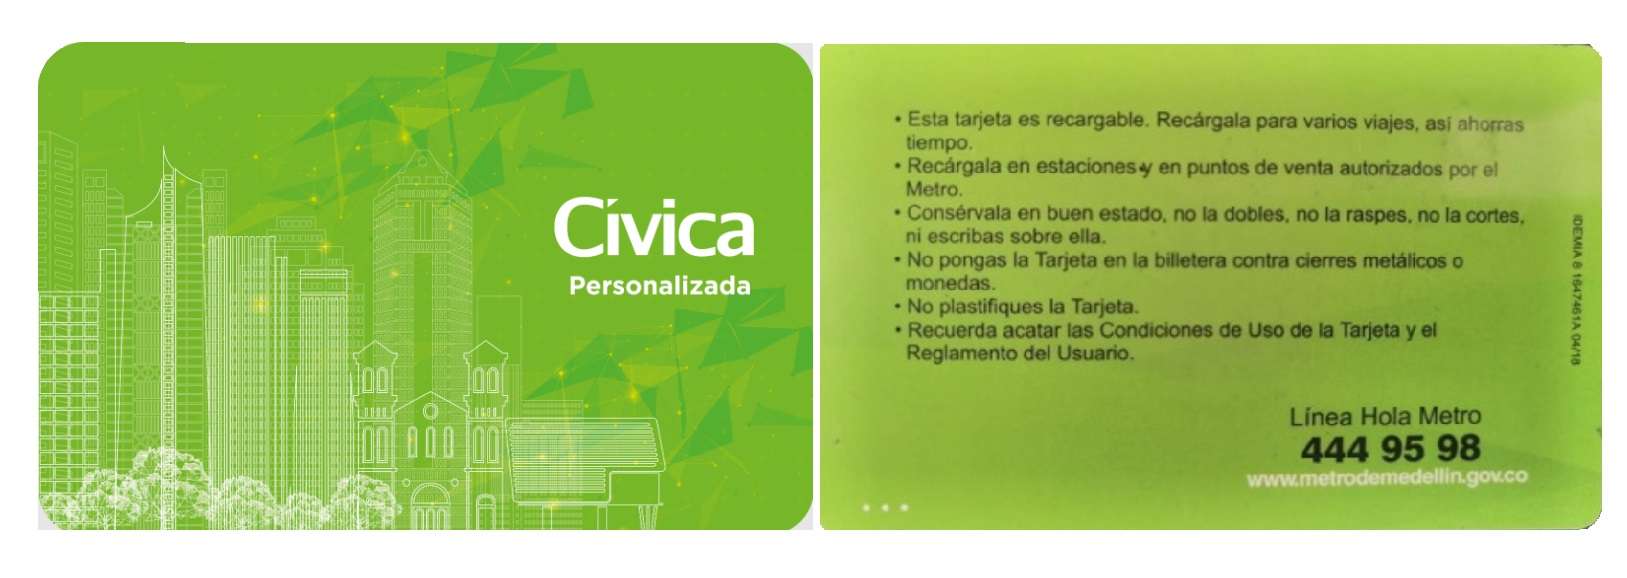 Tarjeta Civica - Transporte Medellín